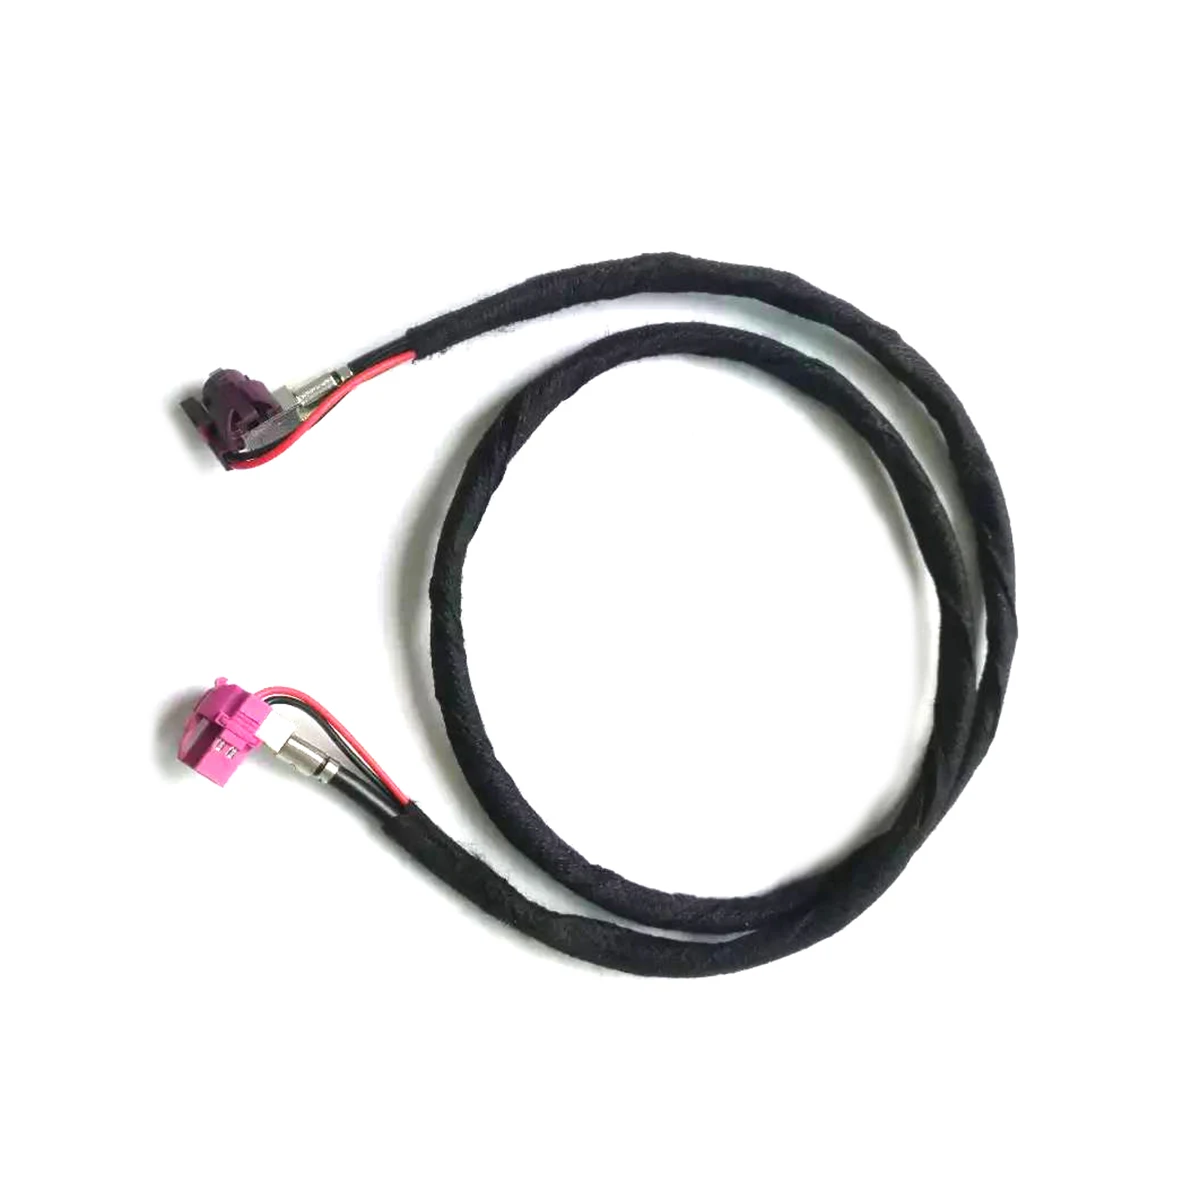 F10 F20 F30 F15 NBT EVO CID Video cable LVDS Line kabel retrofit HSD2 61129261850 For BMW